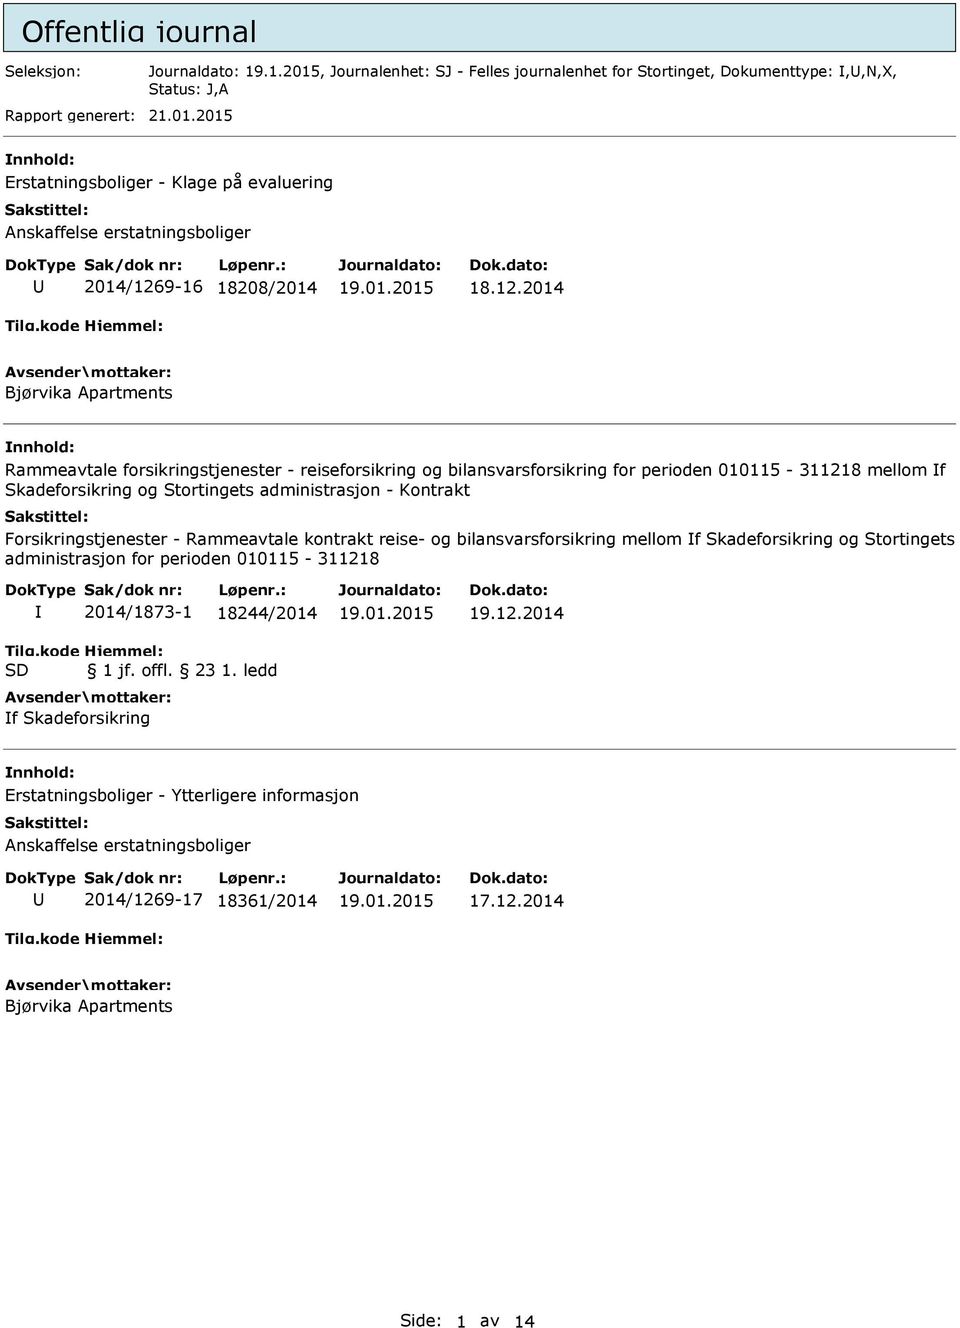 Forsikringstjenester - Rammeavtale kontrakt reise- og bilansvarsforsikring mellom f Skadeforsikring og Stortingets administrasjon for perioden 010115-311218 2014/1873-1 18244/2014 1 jf. offl. 23 1.